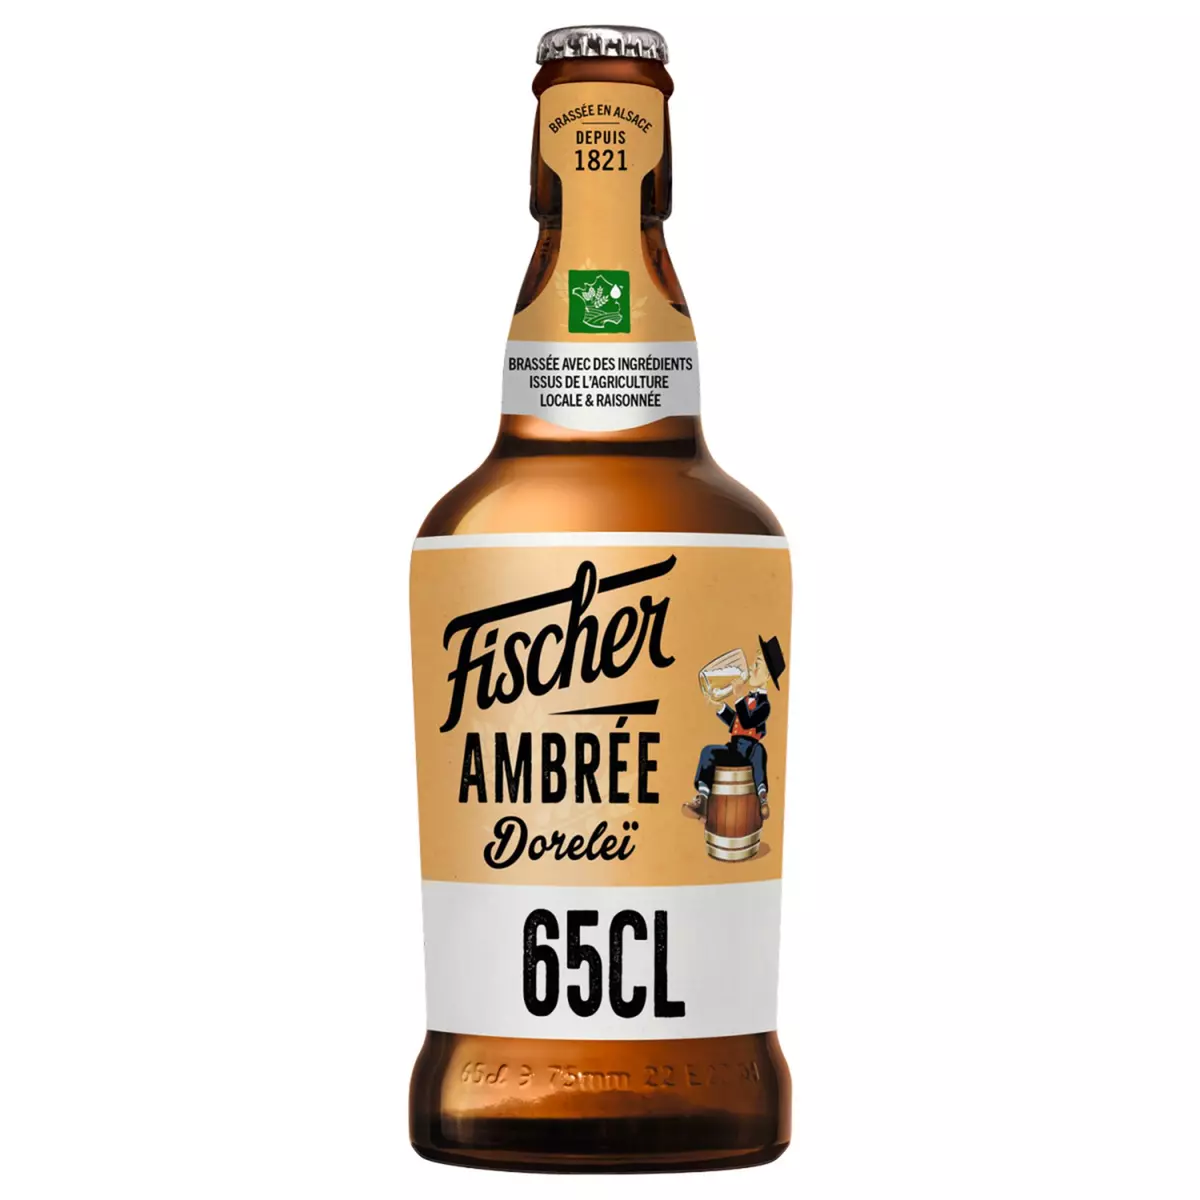 FISCHER Bière dorelei d'alsace ambrée aromatisée 6,3% 65cl